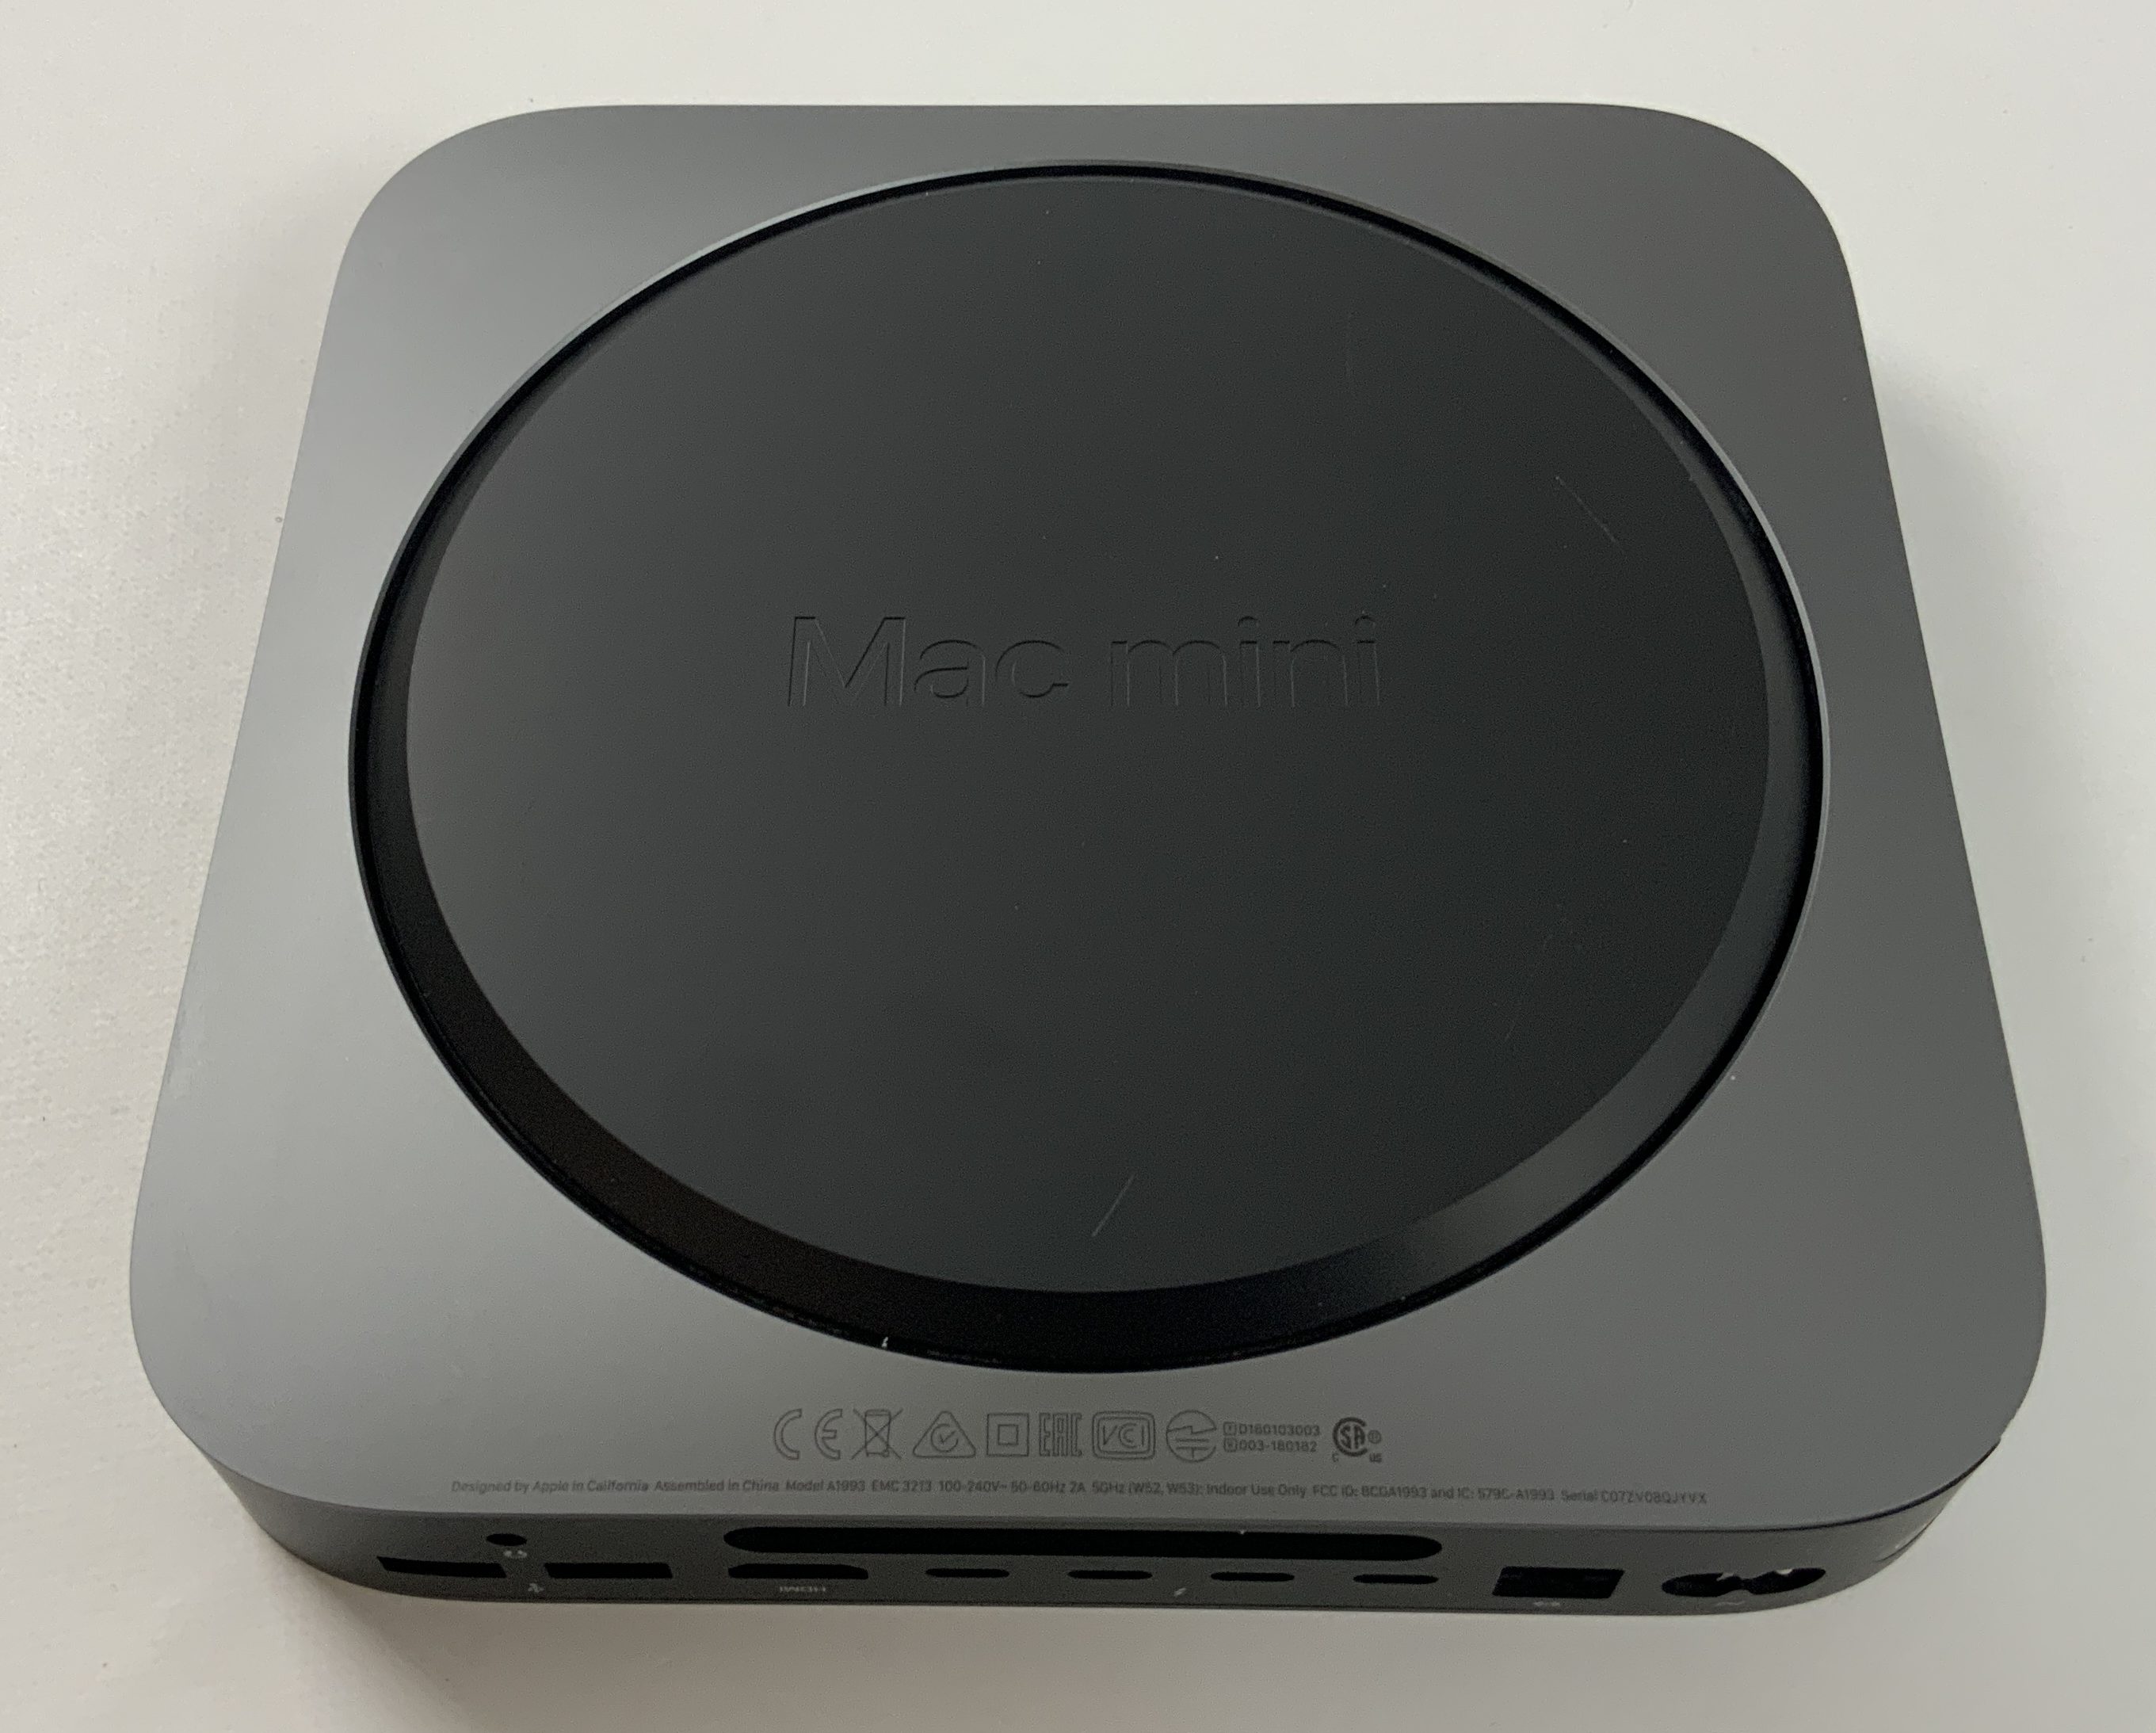 8 gb ram for mac mini (late 2012)